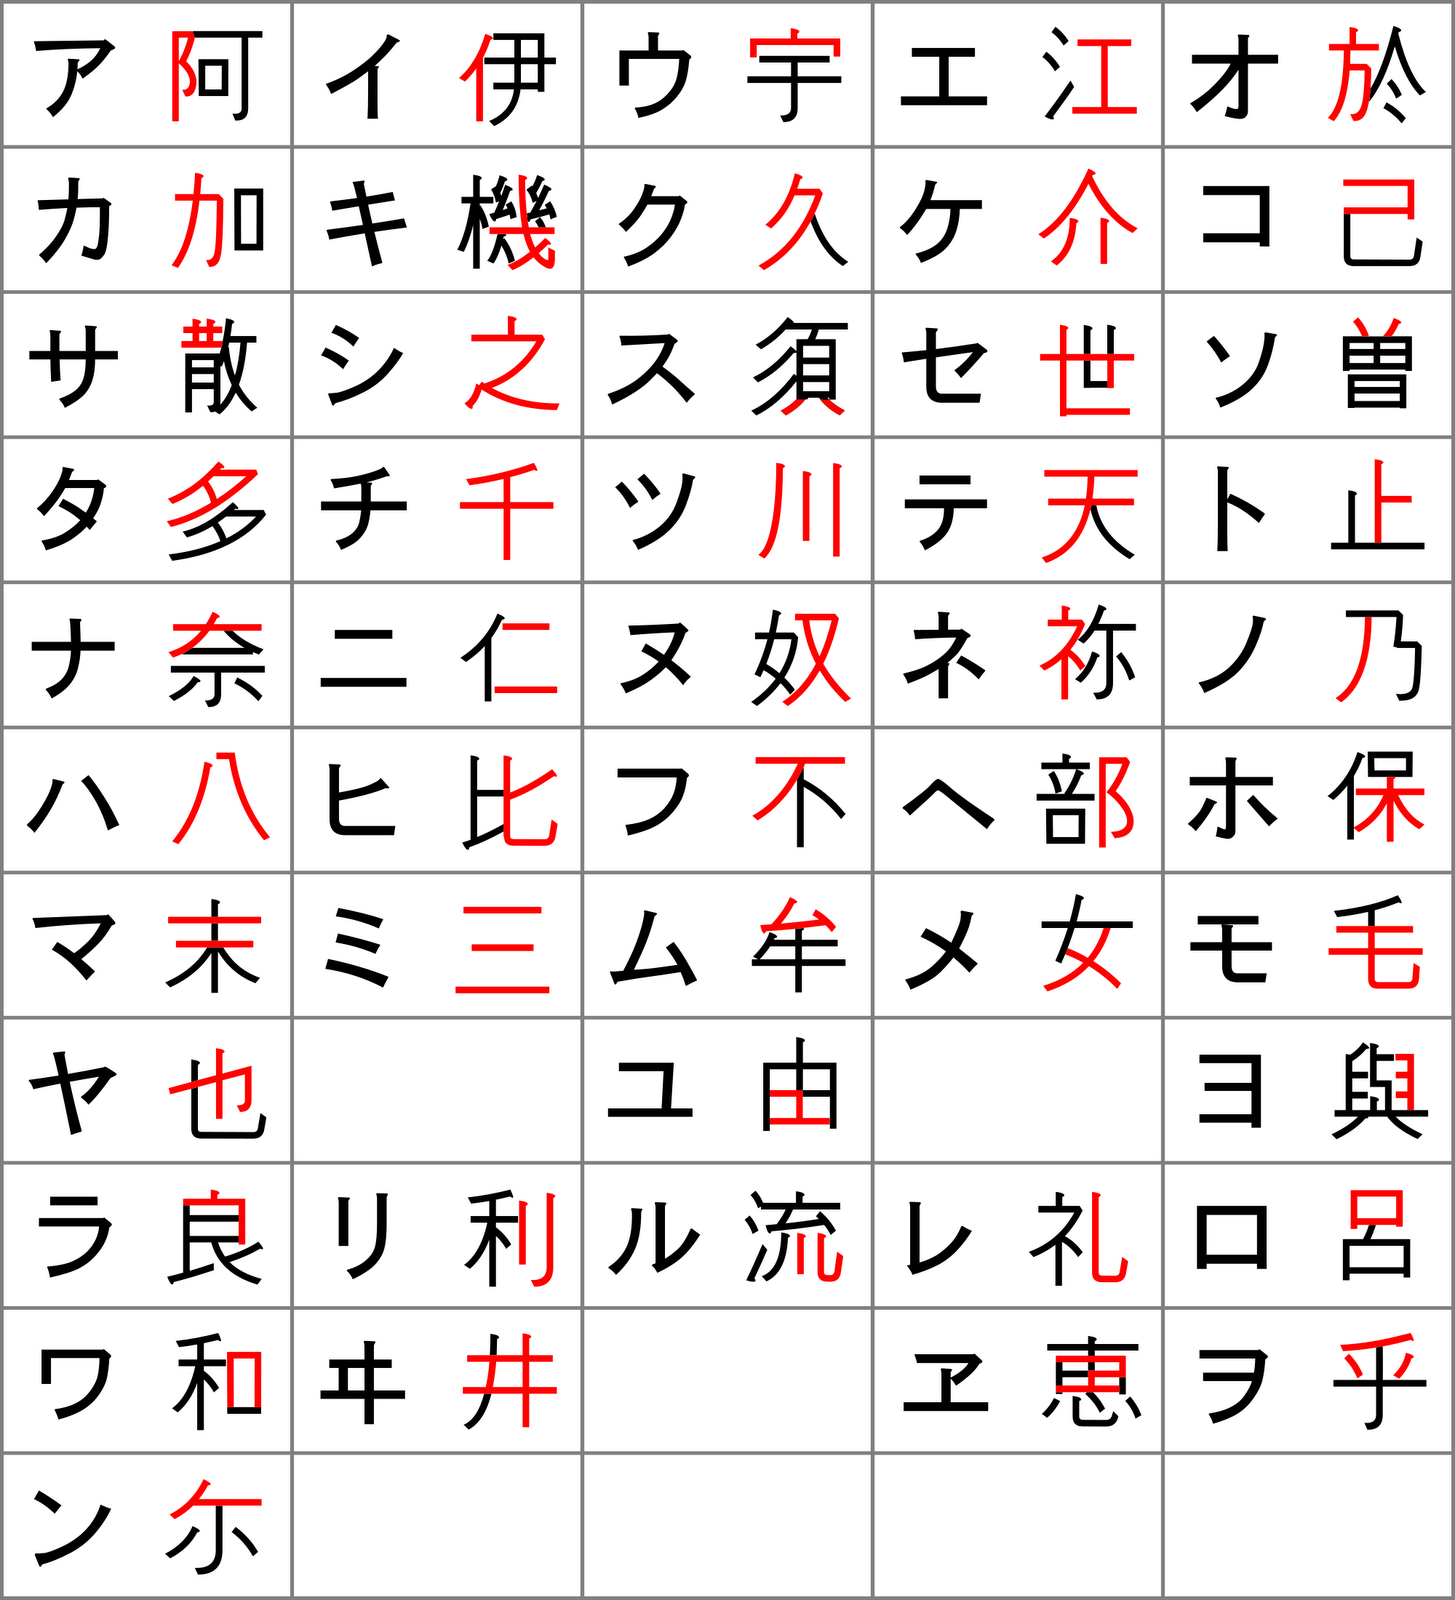 3 Huruf Katakana